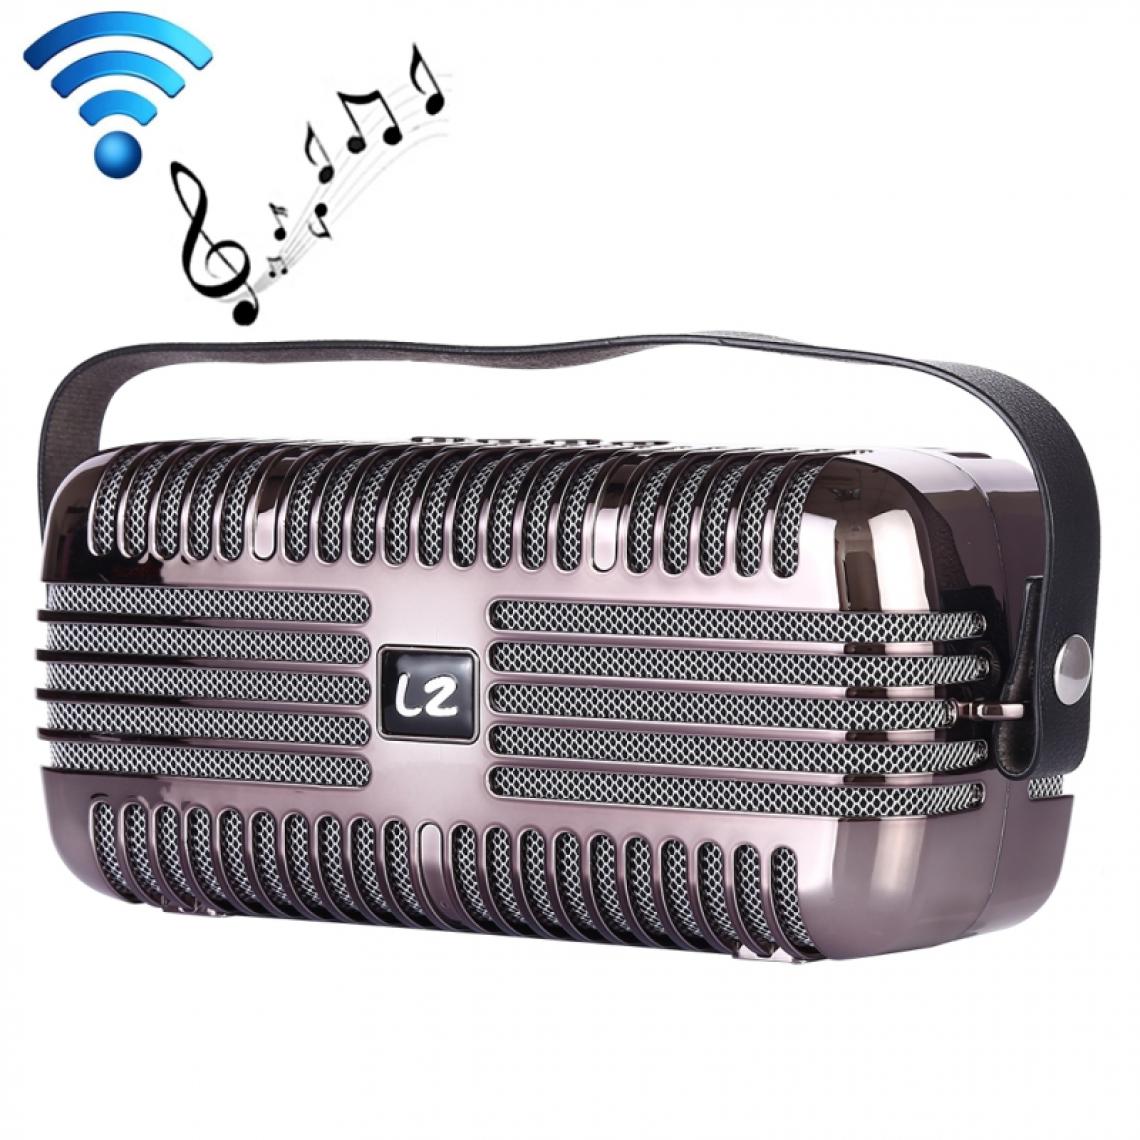 Wewoo - Enceinte Bluetooth Haut-parleur portatif sans fil LZ E27 DC 5V avec appel mains libressupport pour carte USB et TF & Aux 3.5mm Noir - Enceintes Hifi